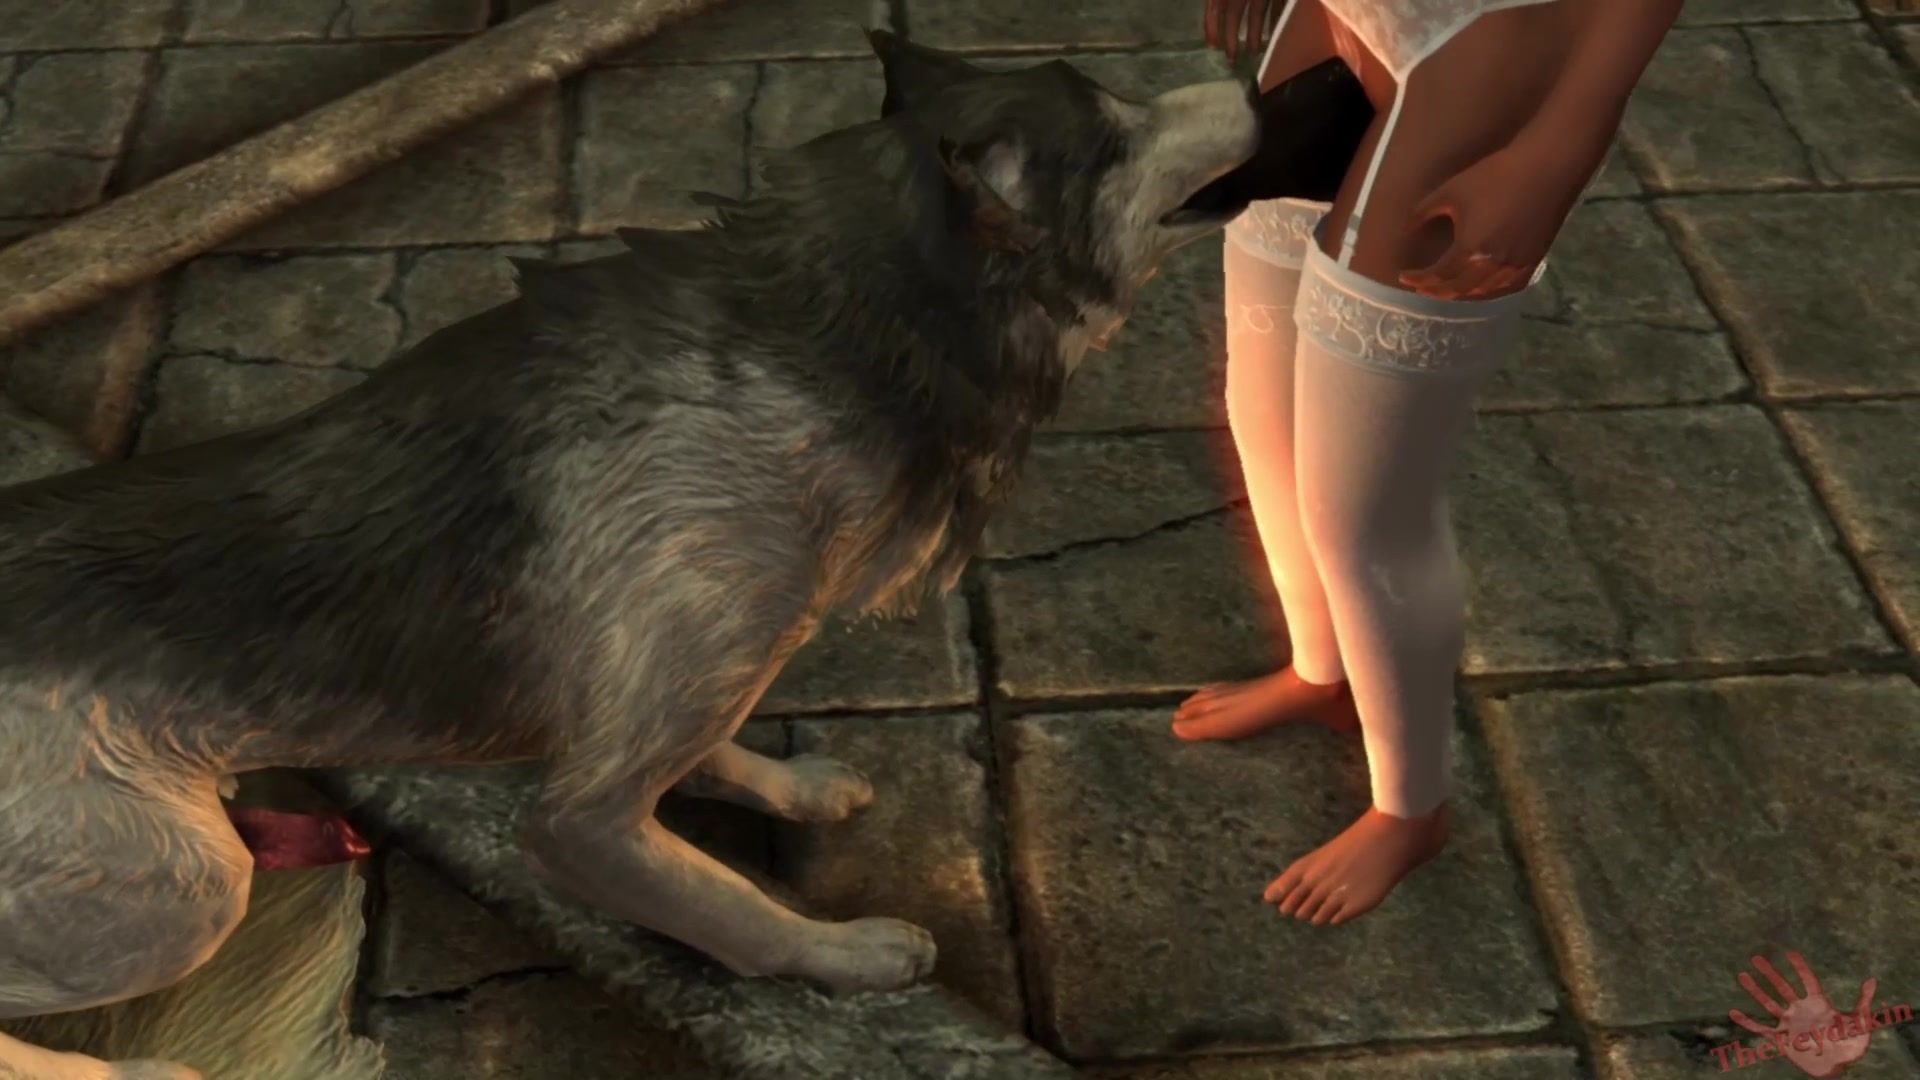 Mensch Fickt Pferd - Rothaariges MÃ¤dchen kopuliert mit Pferd und Wolf in heiÃŸem 3D-Porno